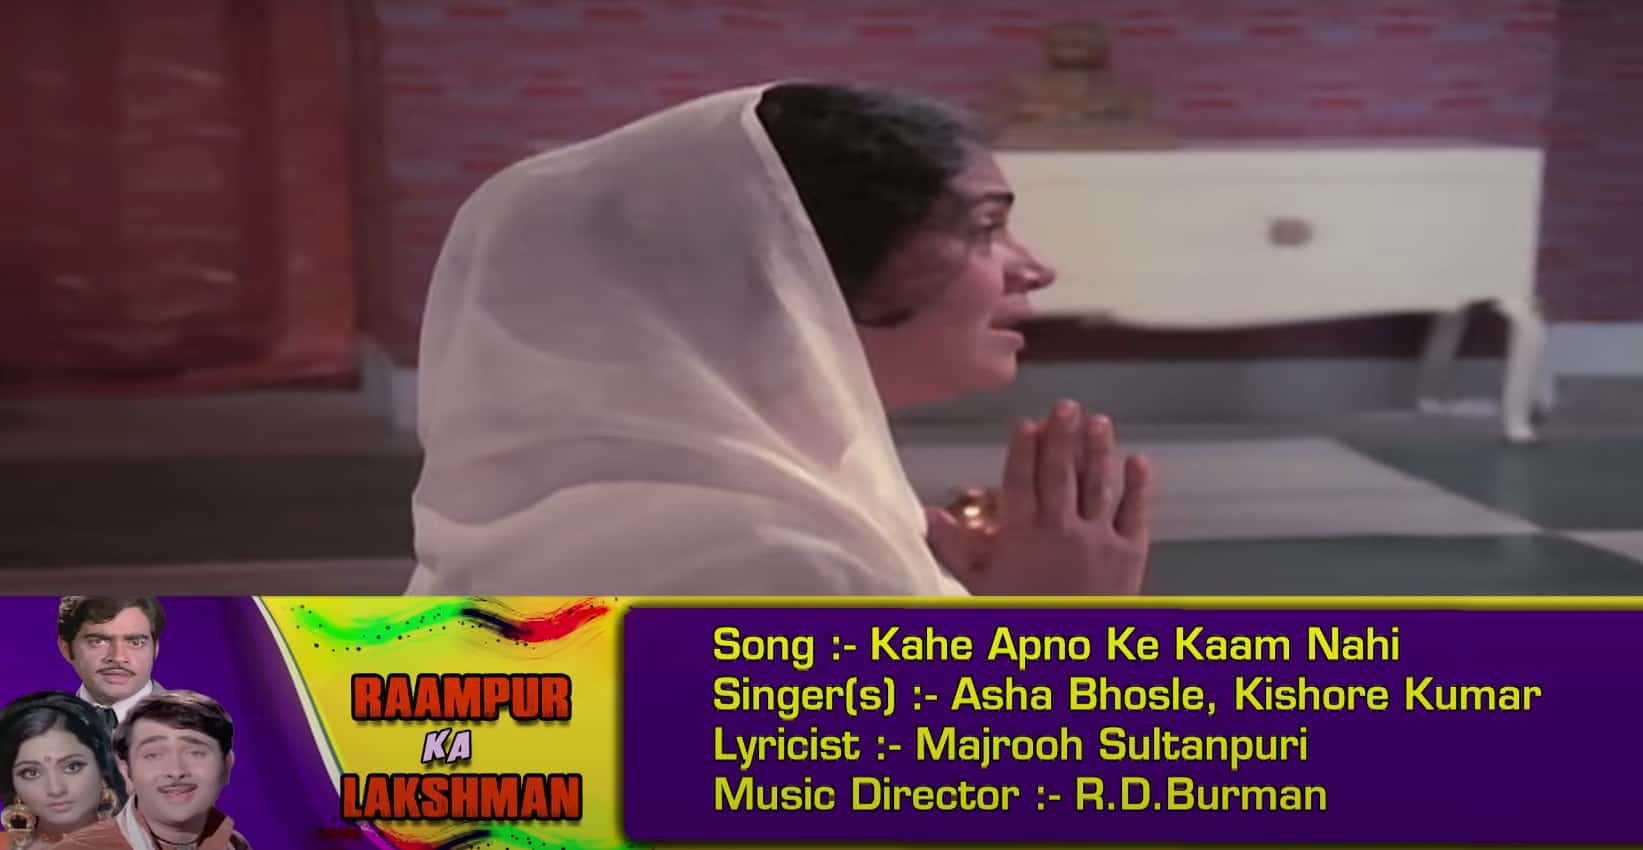 Kahe Apno Ke Kaam Nahi Lyrics - Rampur Ka lakshman